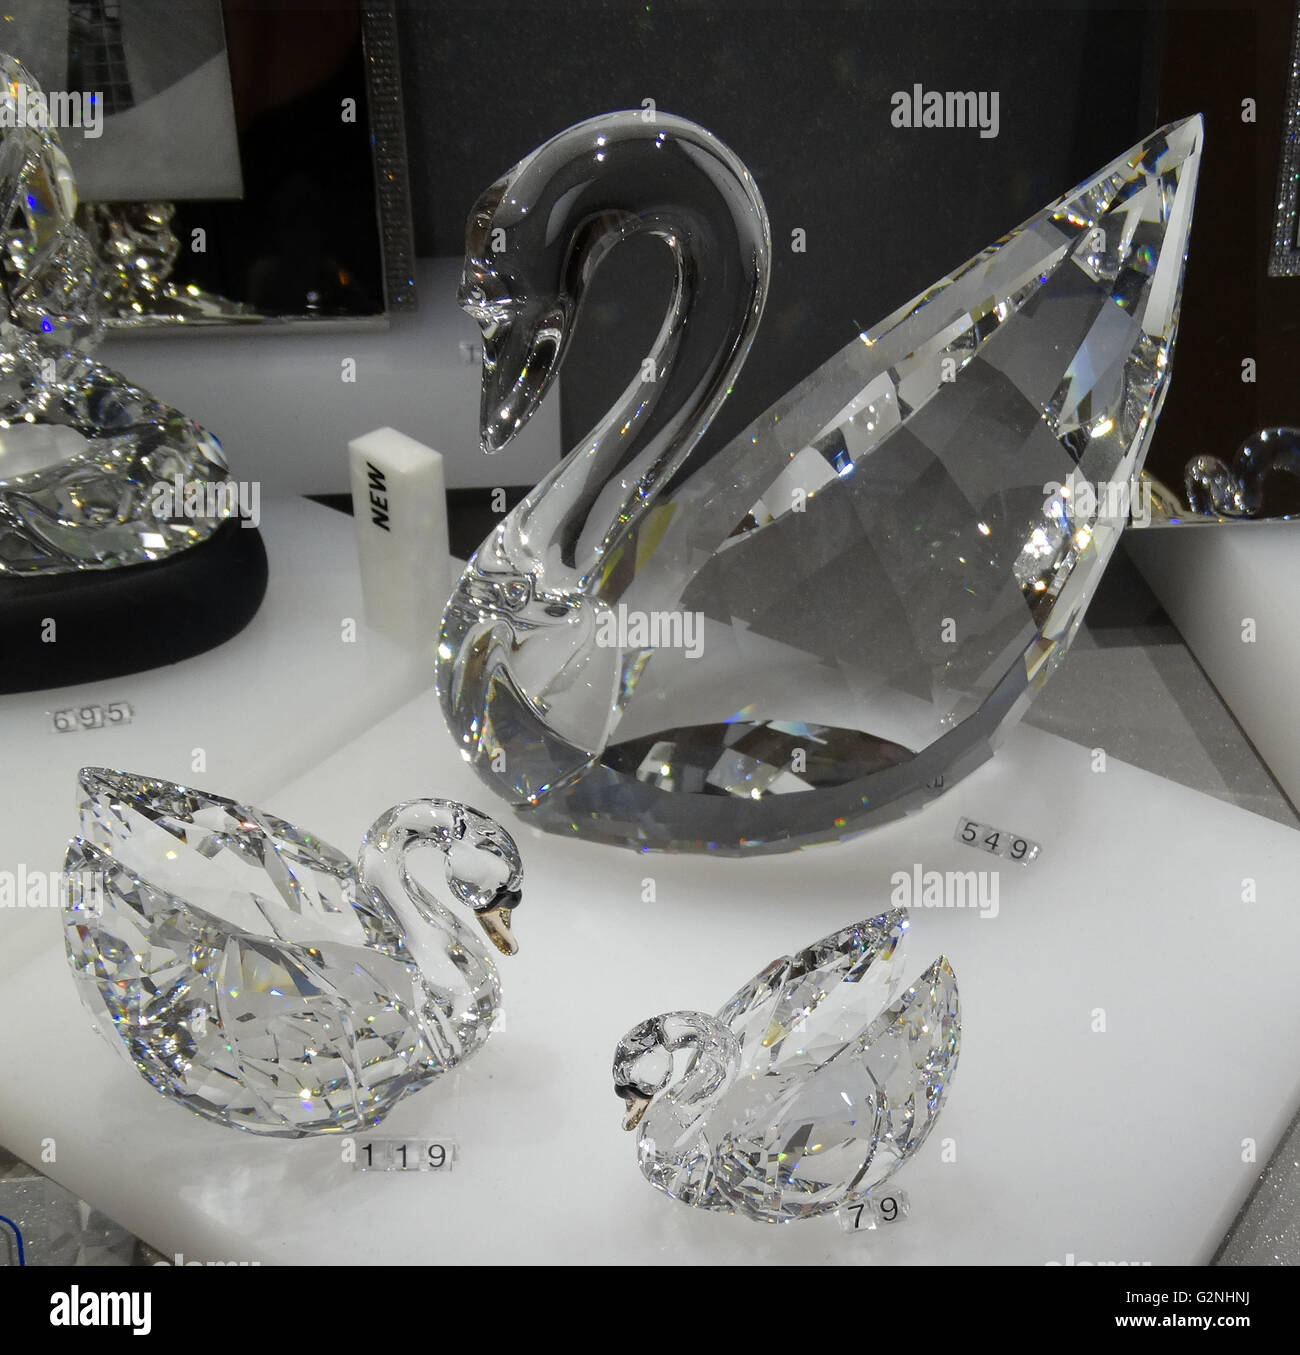 Collection de cygnes de cristal Swarovski. Swarovski est un producteur autrichien de luxe couper verre au plomb. Fondé par Daniel Swarovski (1862-1956). Datée 2014 Banque D'Images